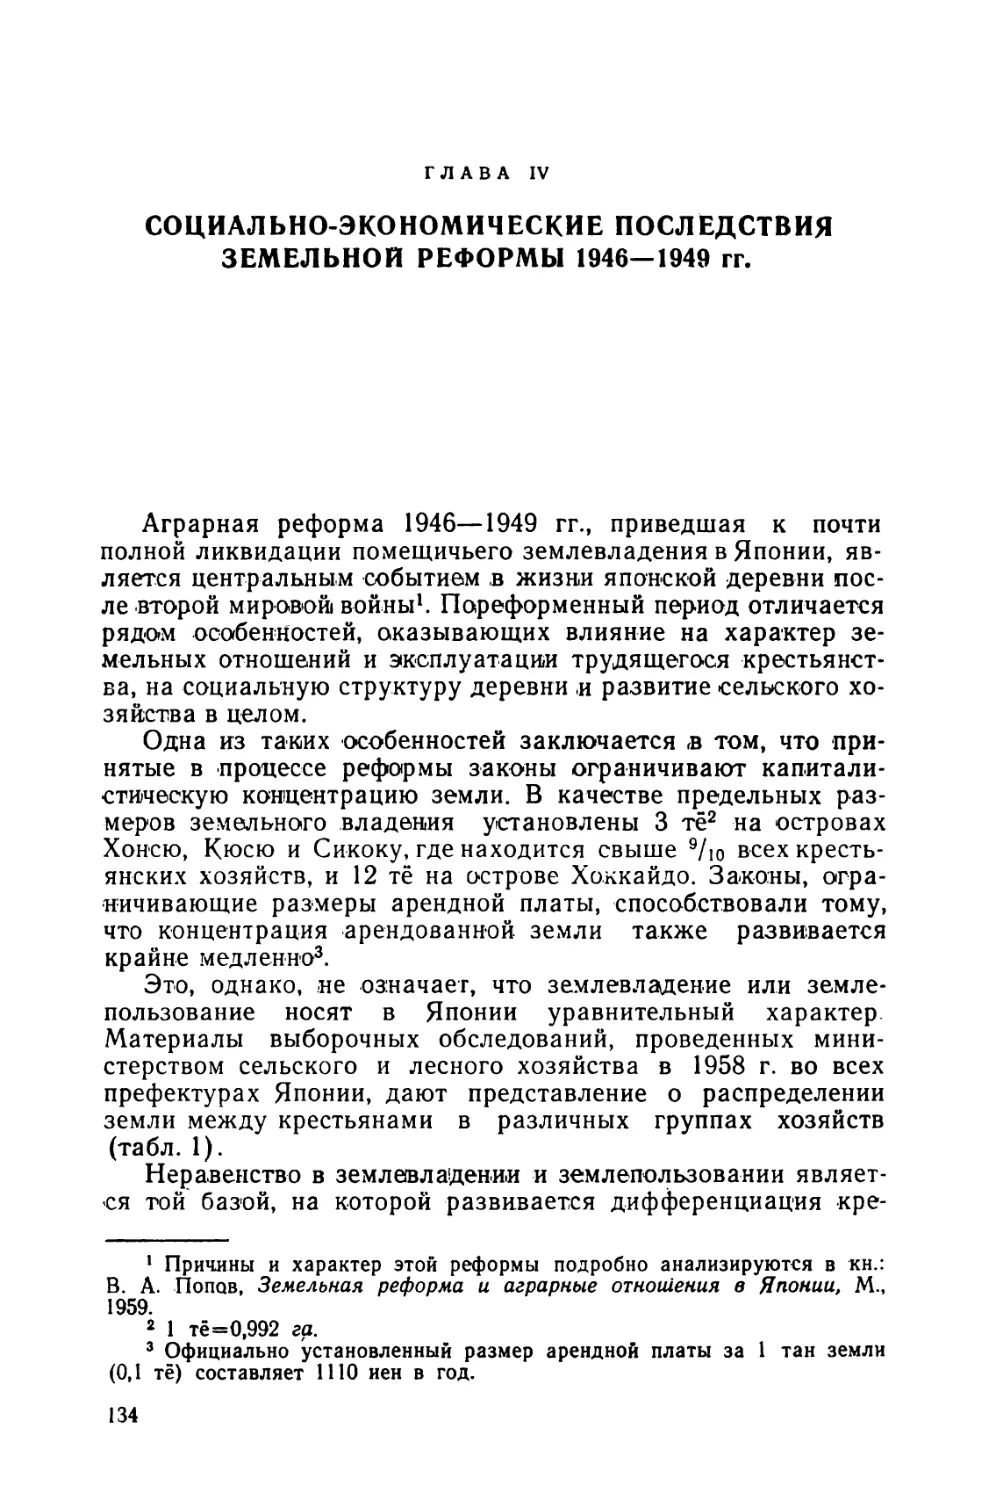 Глава IV. Социально-экономические последствия земельной реформы 1946—1949 гг.